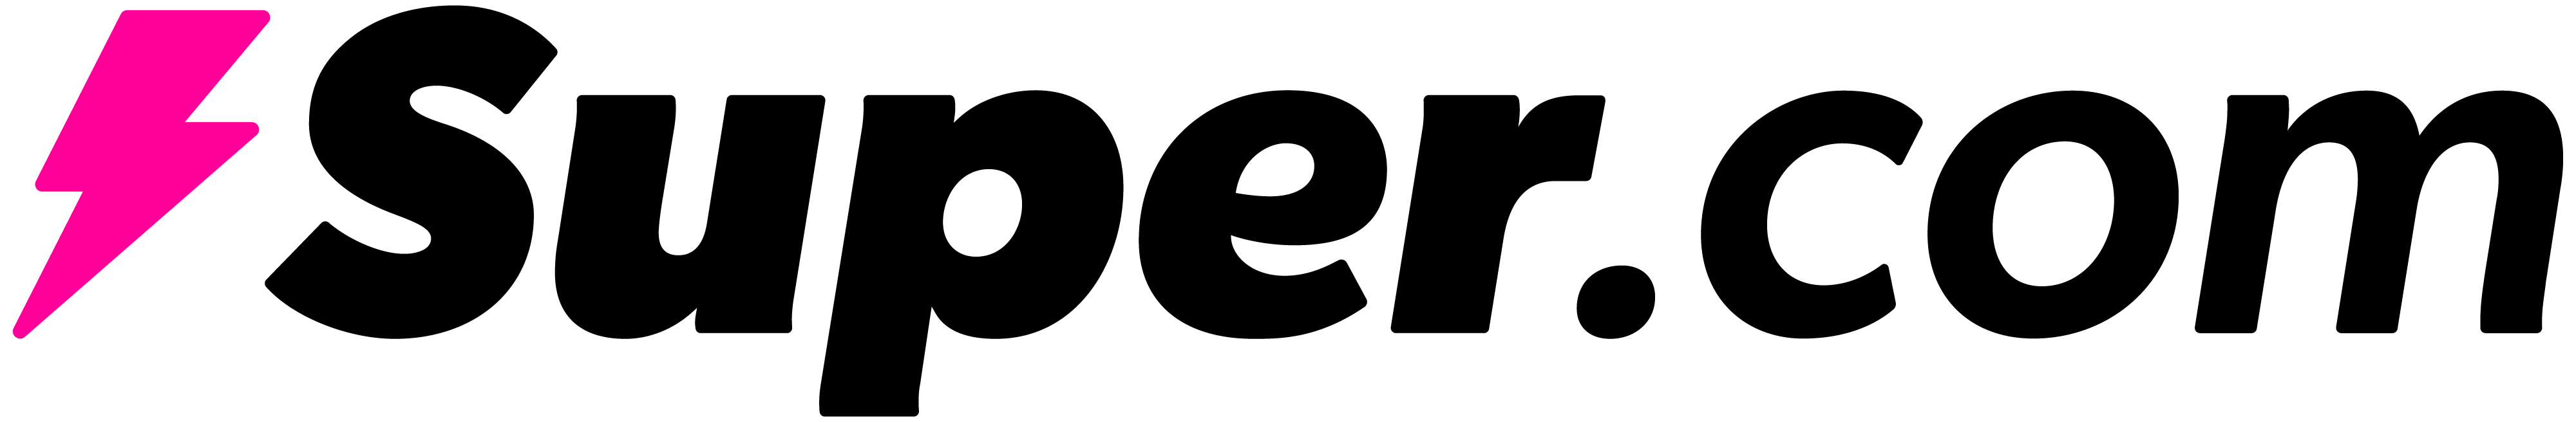 Logo of the company Super.com